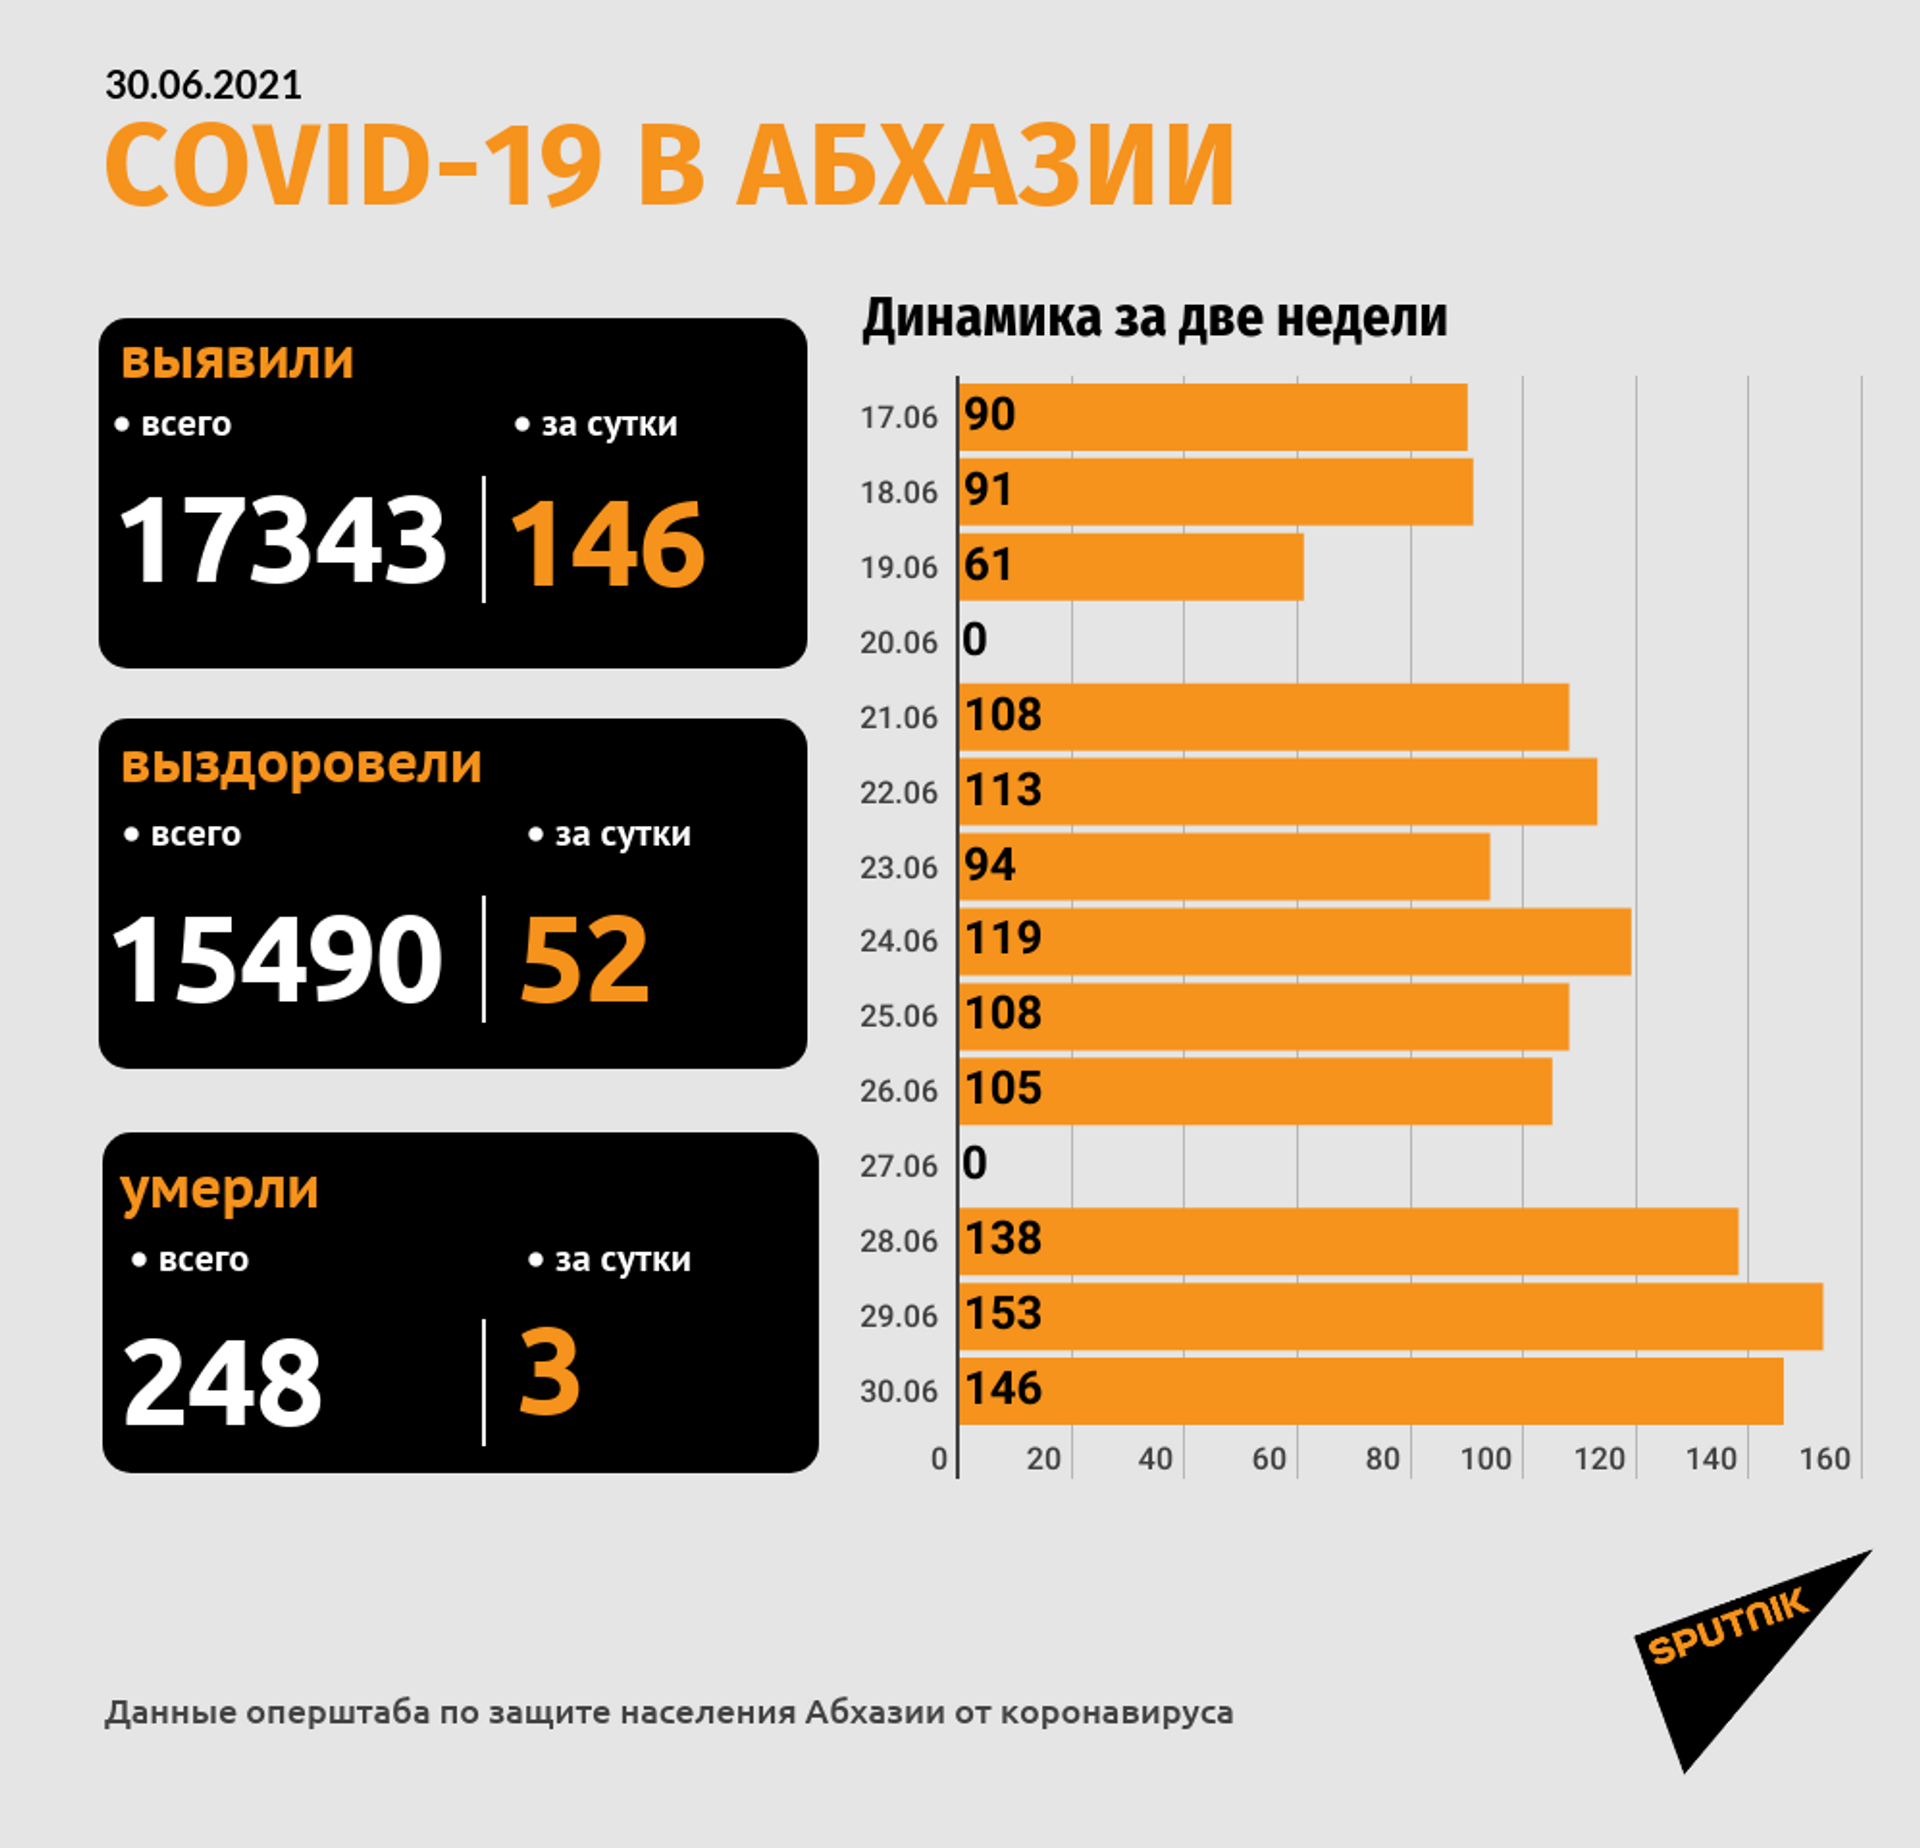 Число смертей от COVID-19 в Абхазии достигло 248 - Sputnik Абхазия, 1920, 30.06.2021